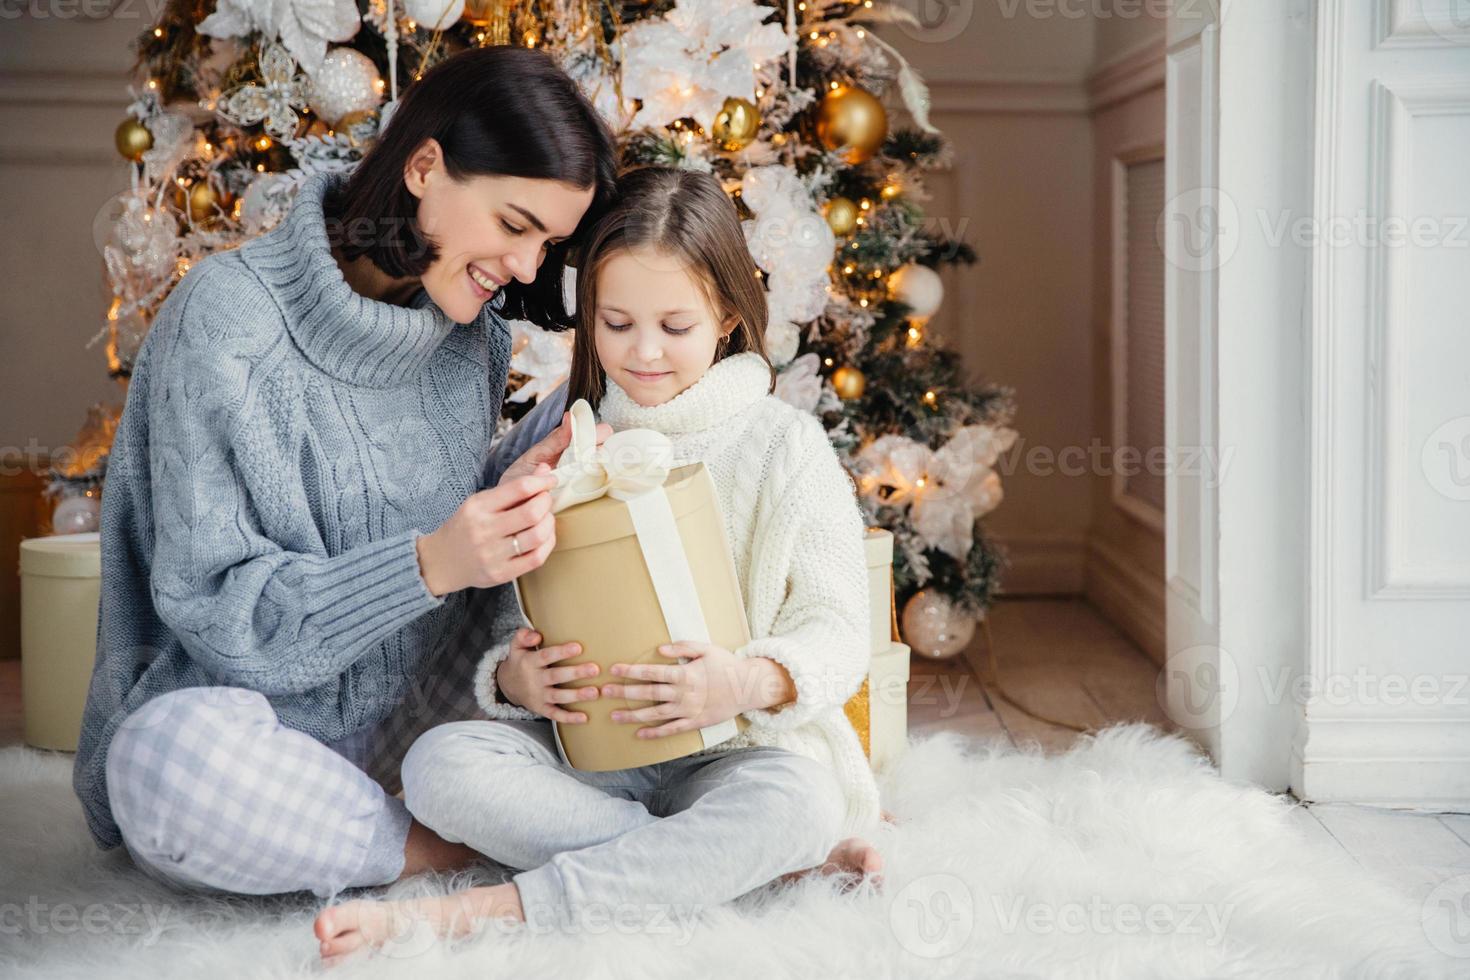 ripresa in interni di una ragazza adorabile e sua madre siedono a gambe incrociate, aprono la scatola regalo avvolta, incuriosiscono ciò che c'è, si siedono contro il nuovo anno o l'albero di Natale decorato, hanno un sorriso sincero e gentile sui volti foto